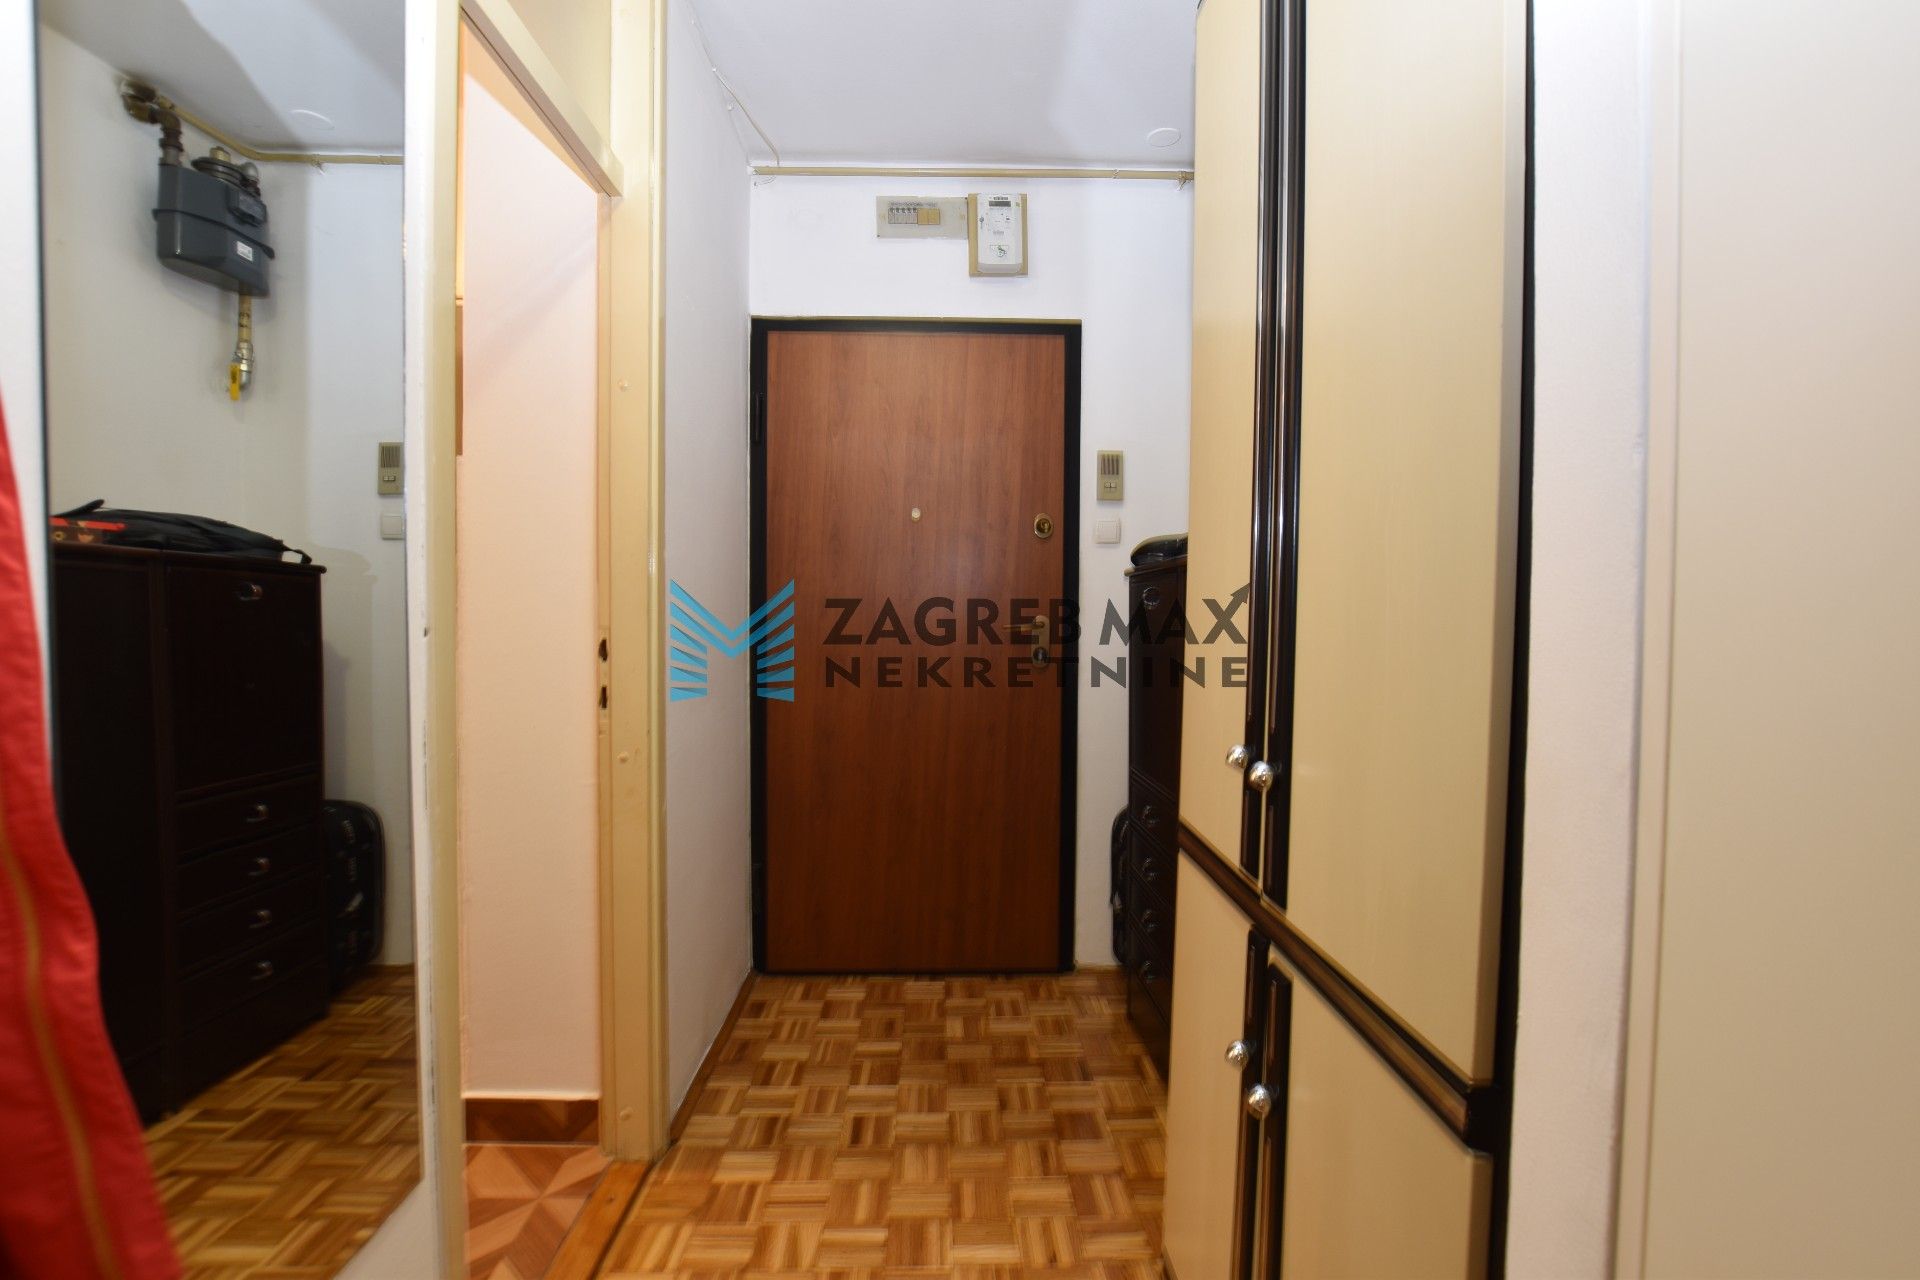 Zagreb - STENJEVEC Funkcionalan 1soban stan 39 m2, 5. kat, lift, mirno okruženje, loggia, spremište